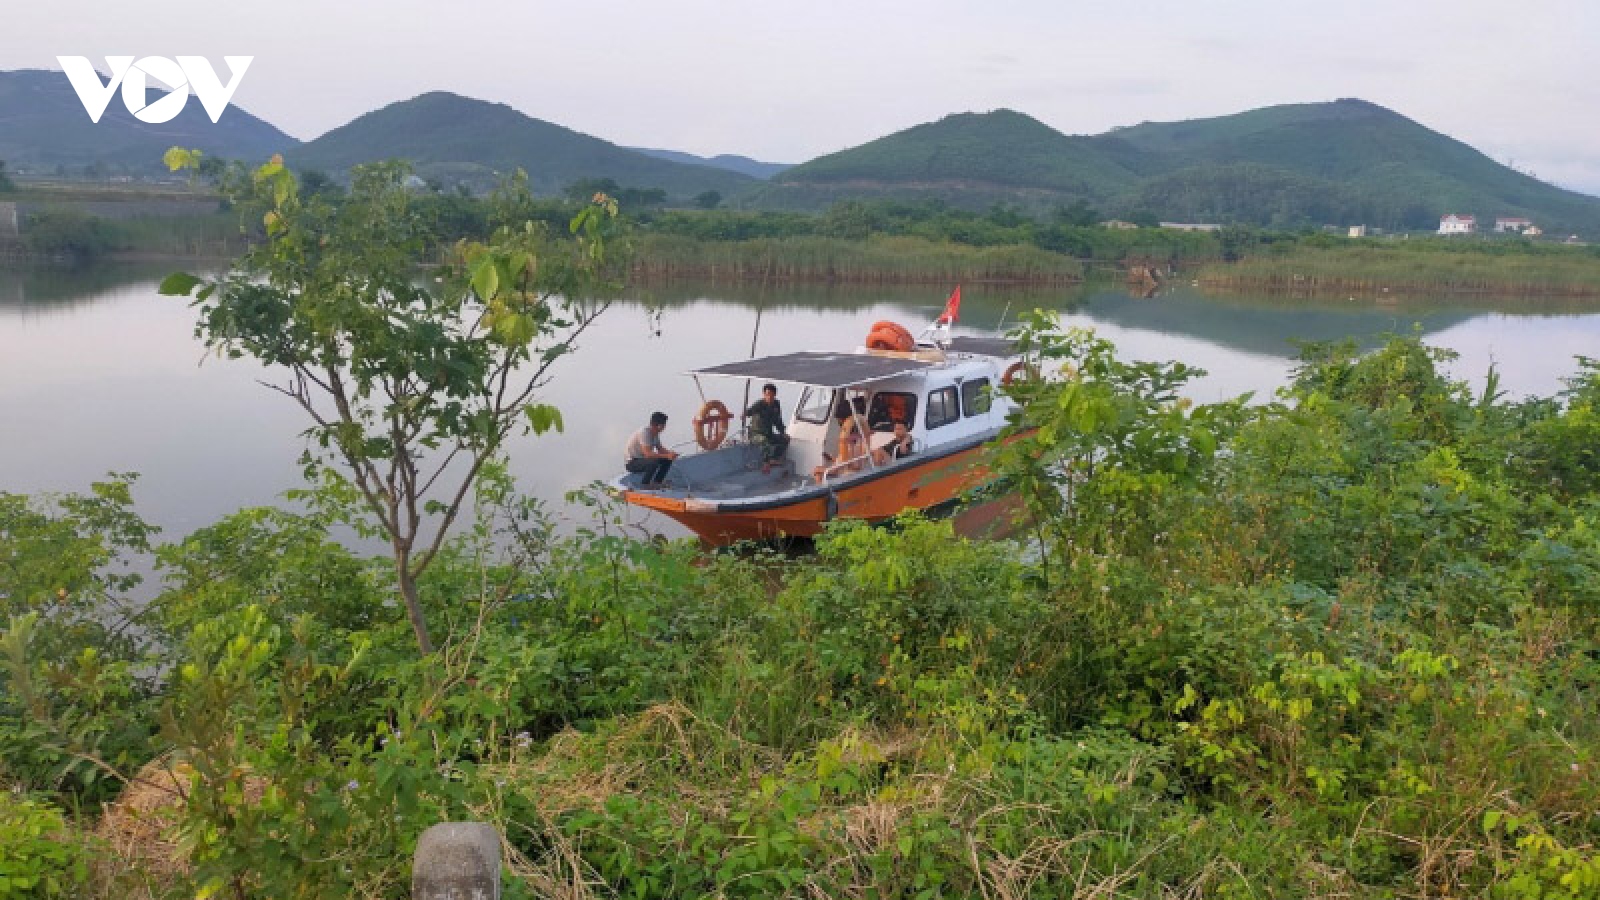 Liên tiếp xảy ra 3 vụ đuối nước làm 5 người thiệt mạng tại Quảng Bình